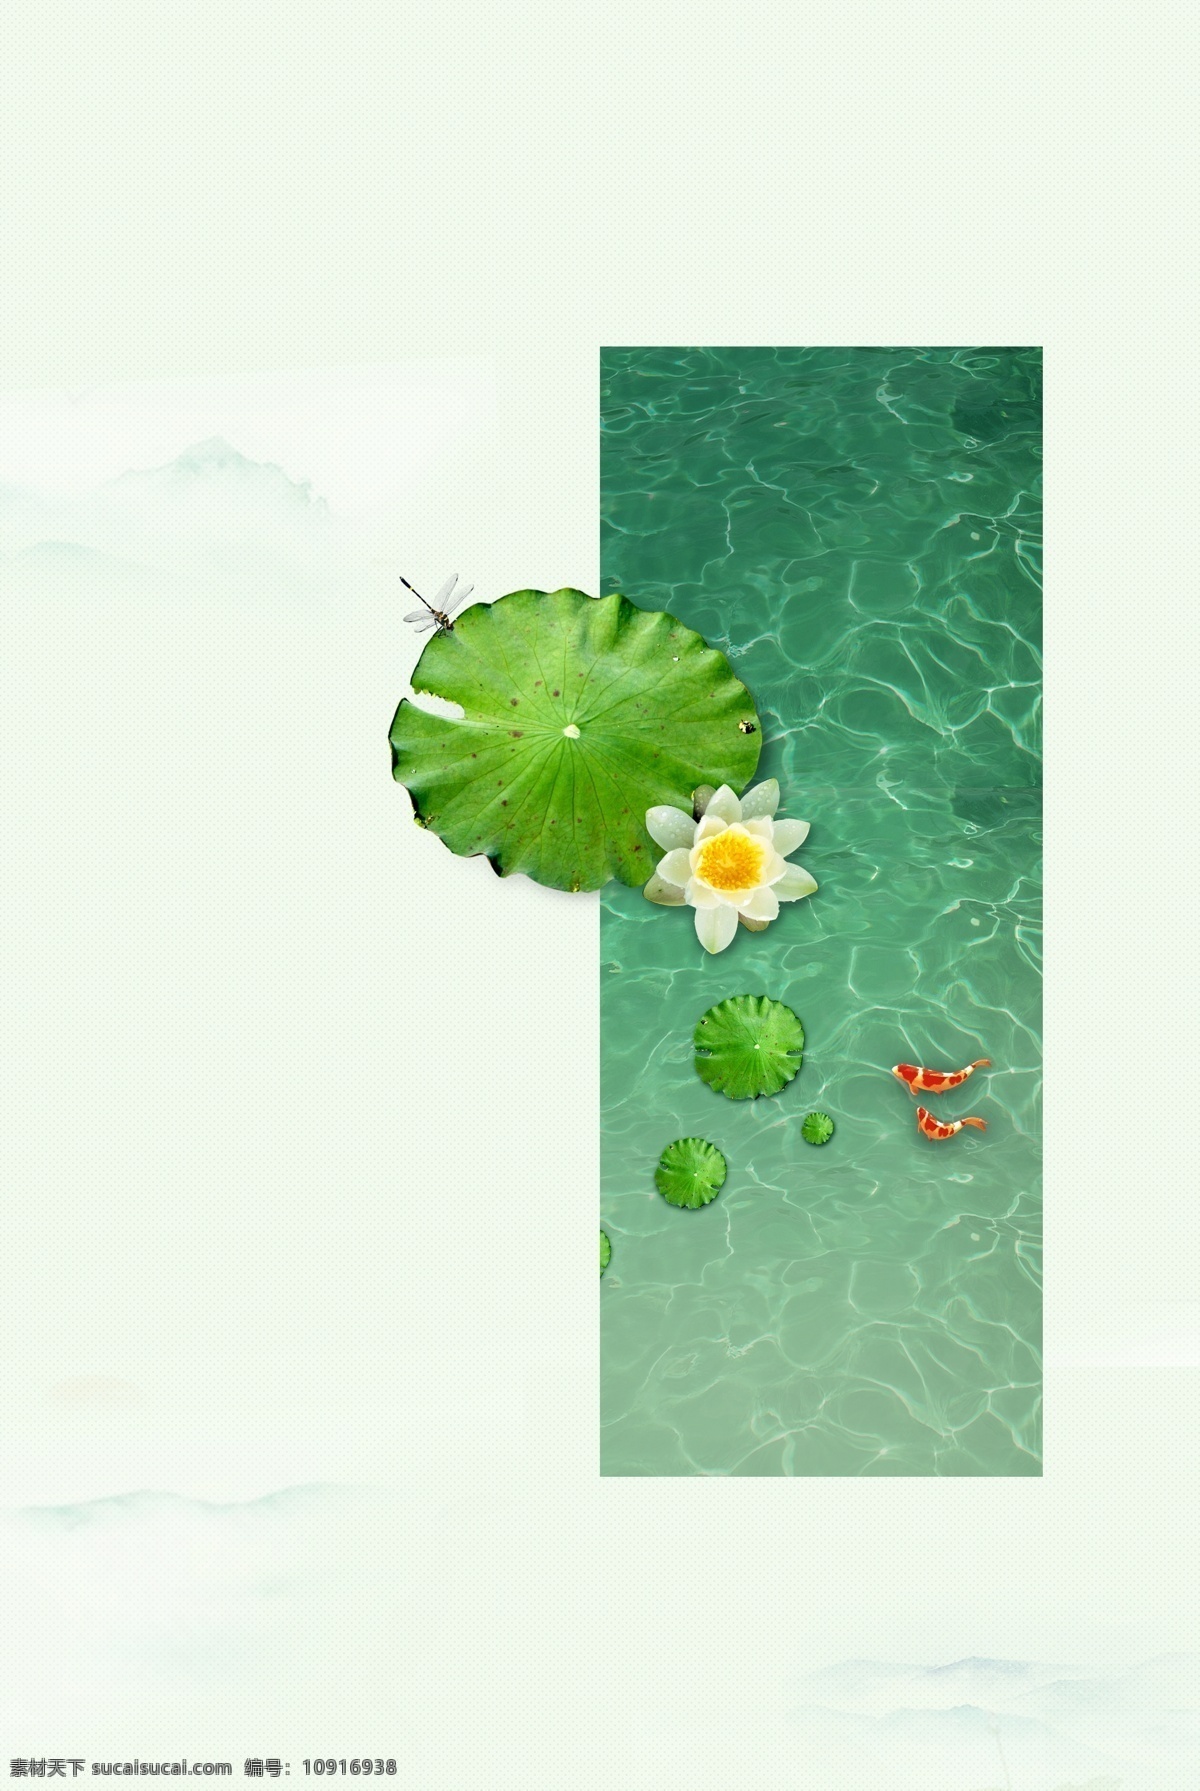 简约 清新 小暑 海报 背景 大图 水纹 荷叶 金鱼 蜻蜓 传统节气 夏天 花朵 开心